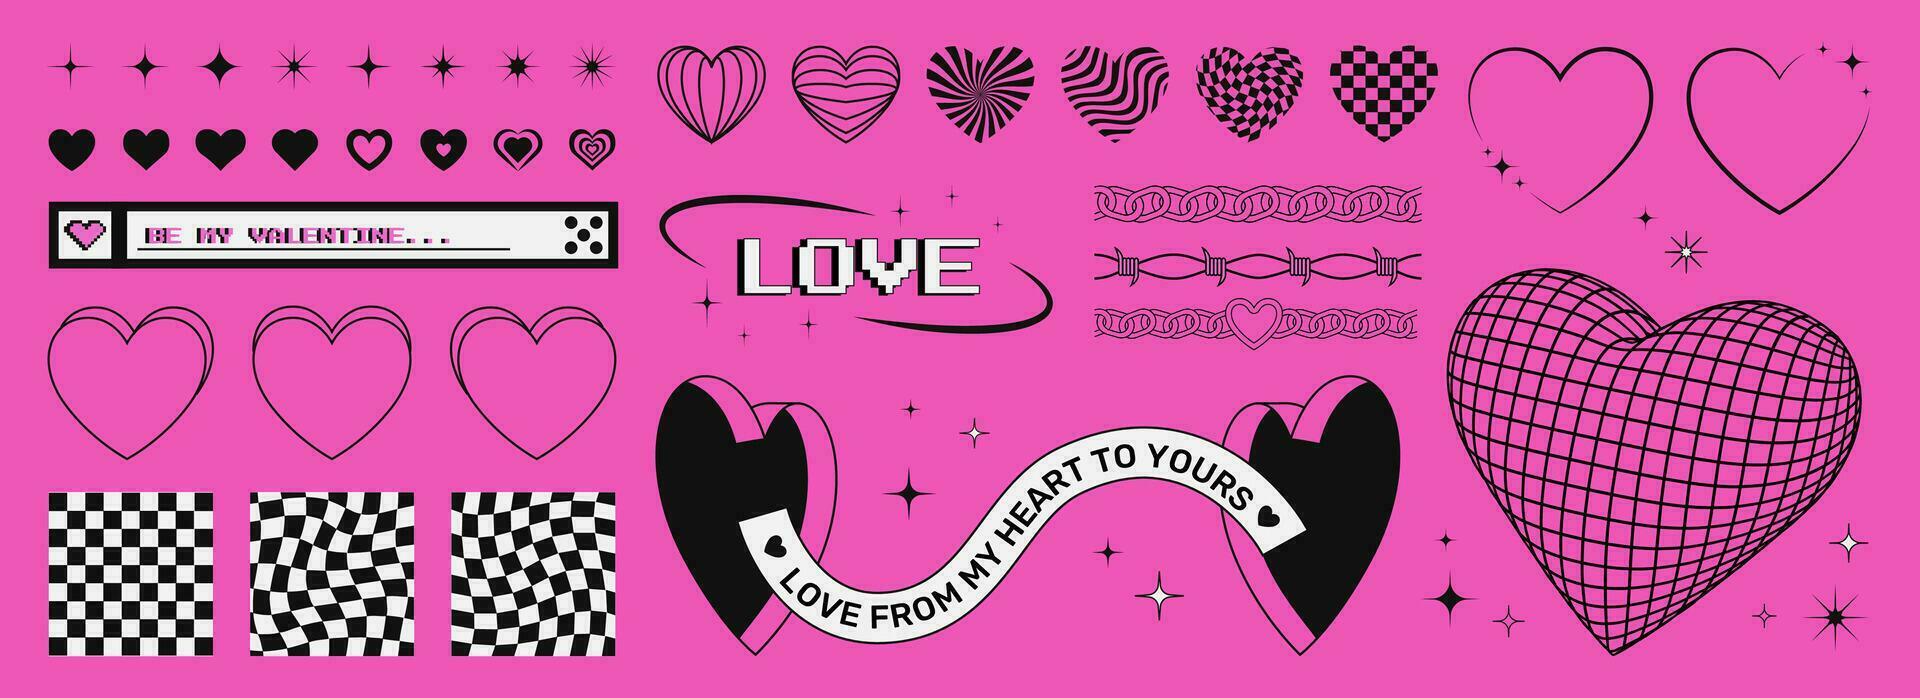 conjunto de de moda San Valentín día y2k gráfico formas en un rosado ácido fondo, corazones y estrellas símbolos, marcos, tableros de ajedrez, 3d corazón y puertas vector Arte.